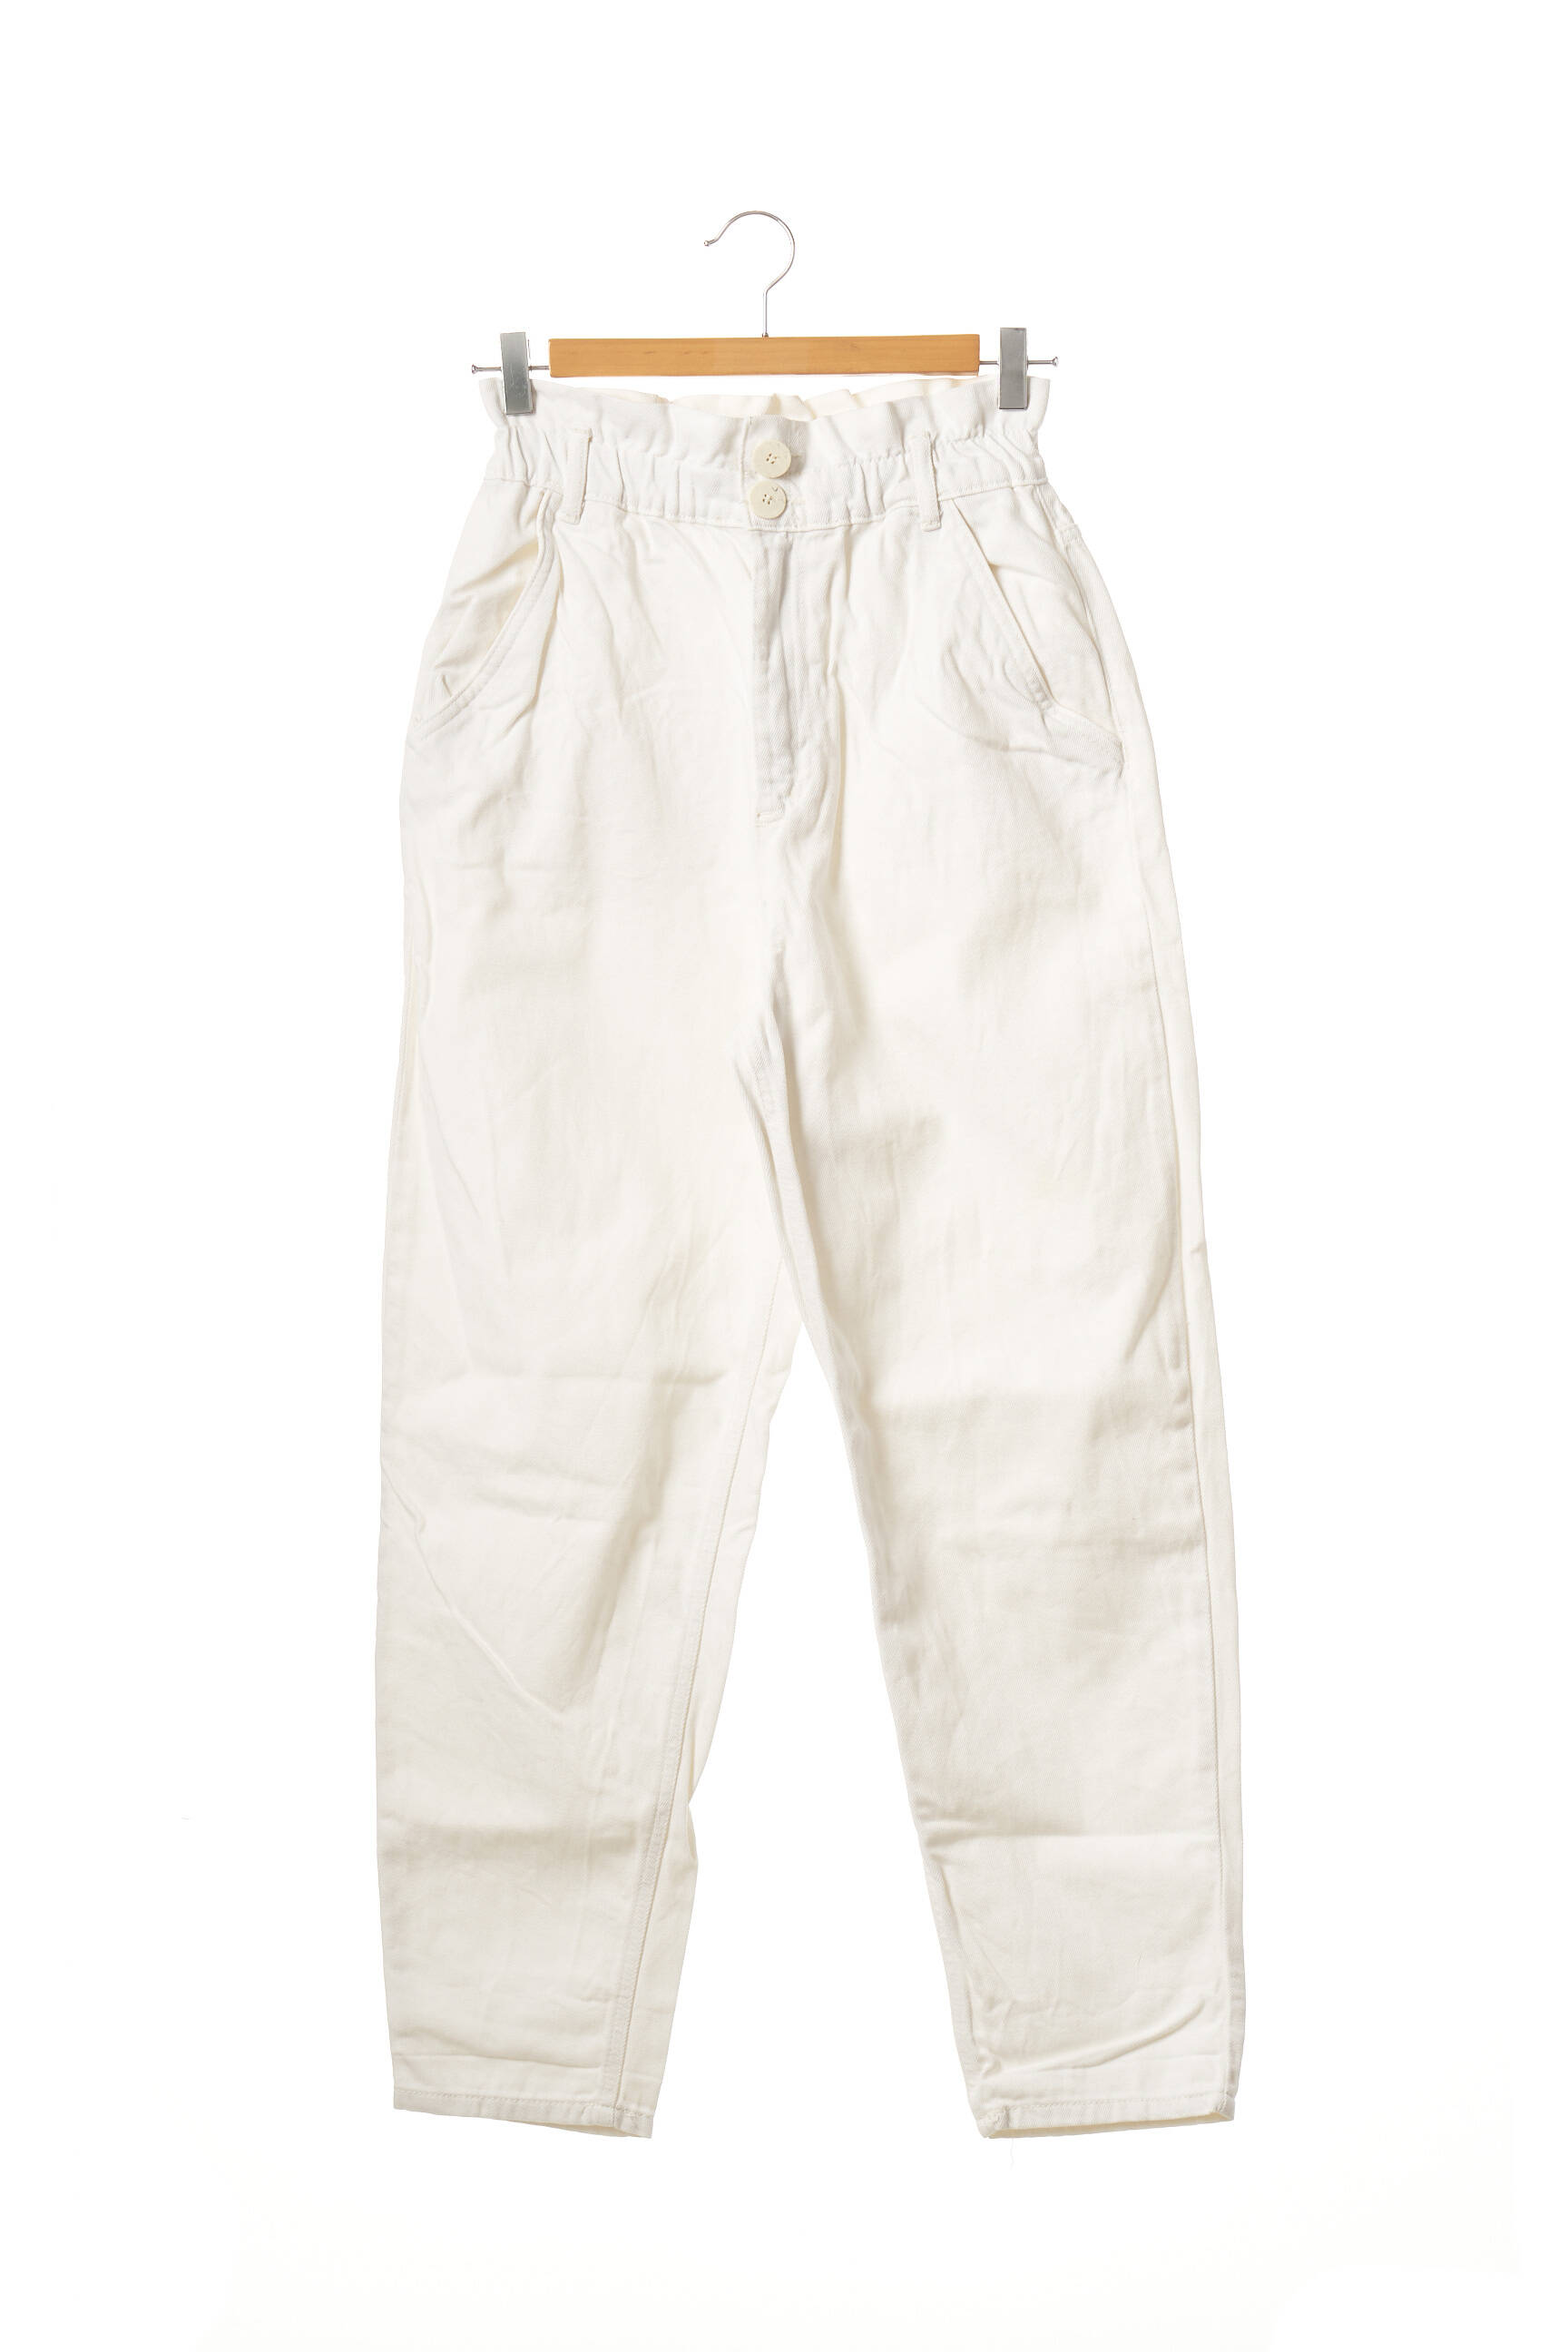 Zara Pantalon7 8 Femme De Couleur Blanc 1804298-blanc0 - Modz